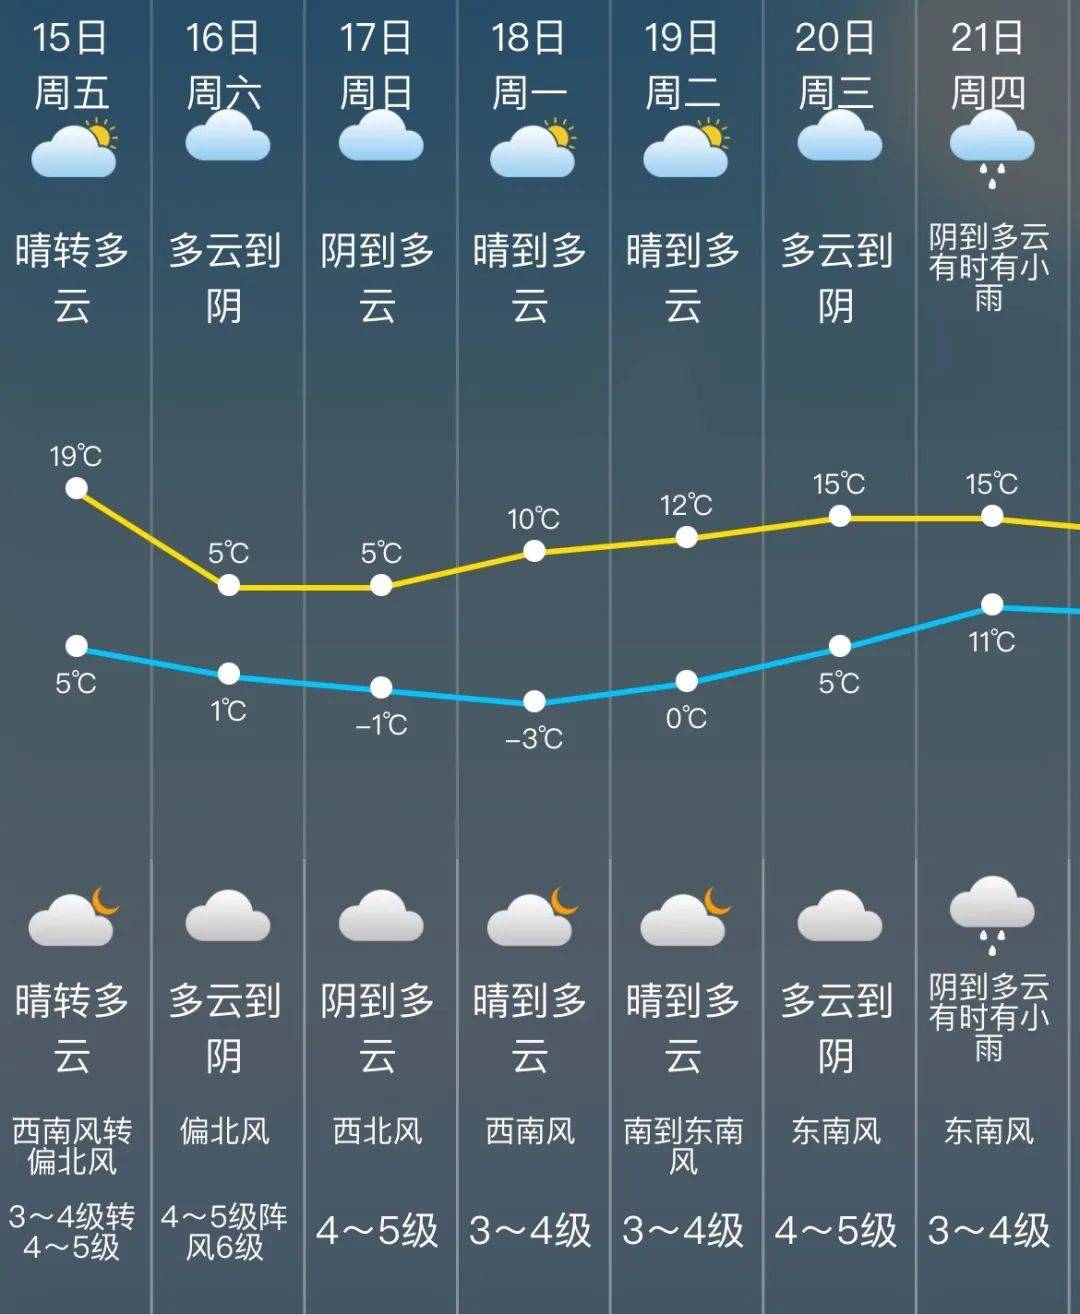 骤降14°C!松江又要零下了!目前寒潮+